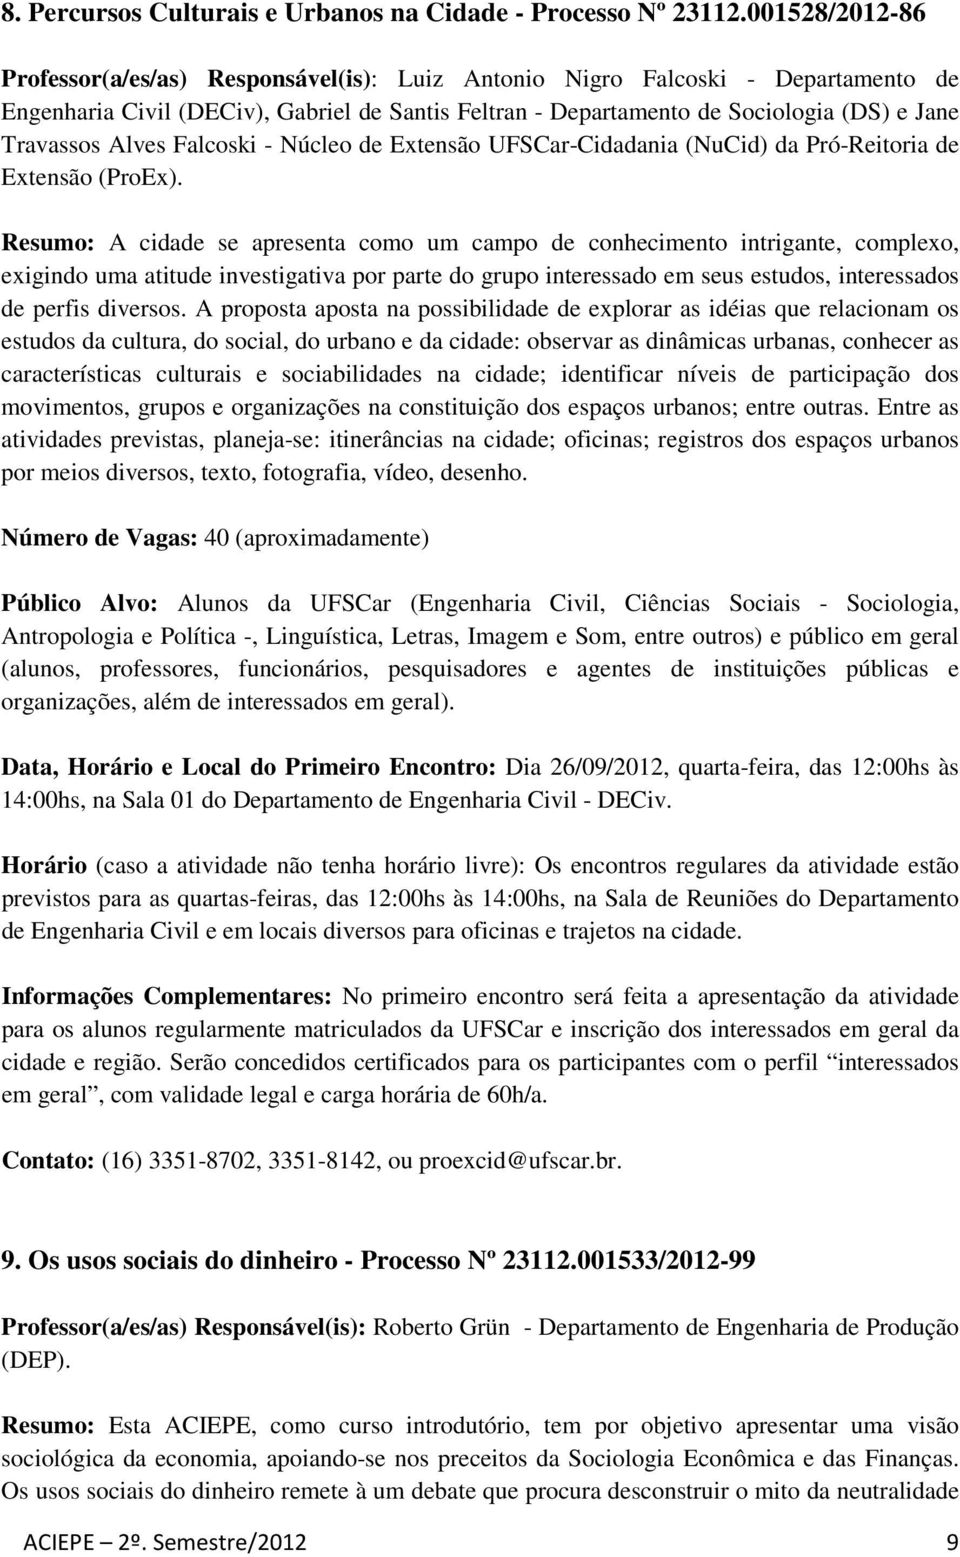 Alves Falcoski - Núcleo de Extensão UFSCar-Cidadania (NuCid) da Pró-Reitoria de Extensão (ProEx).